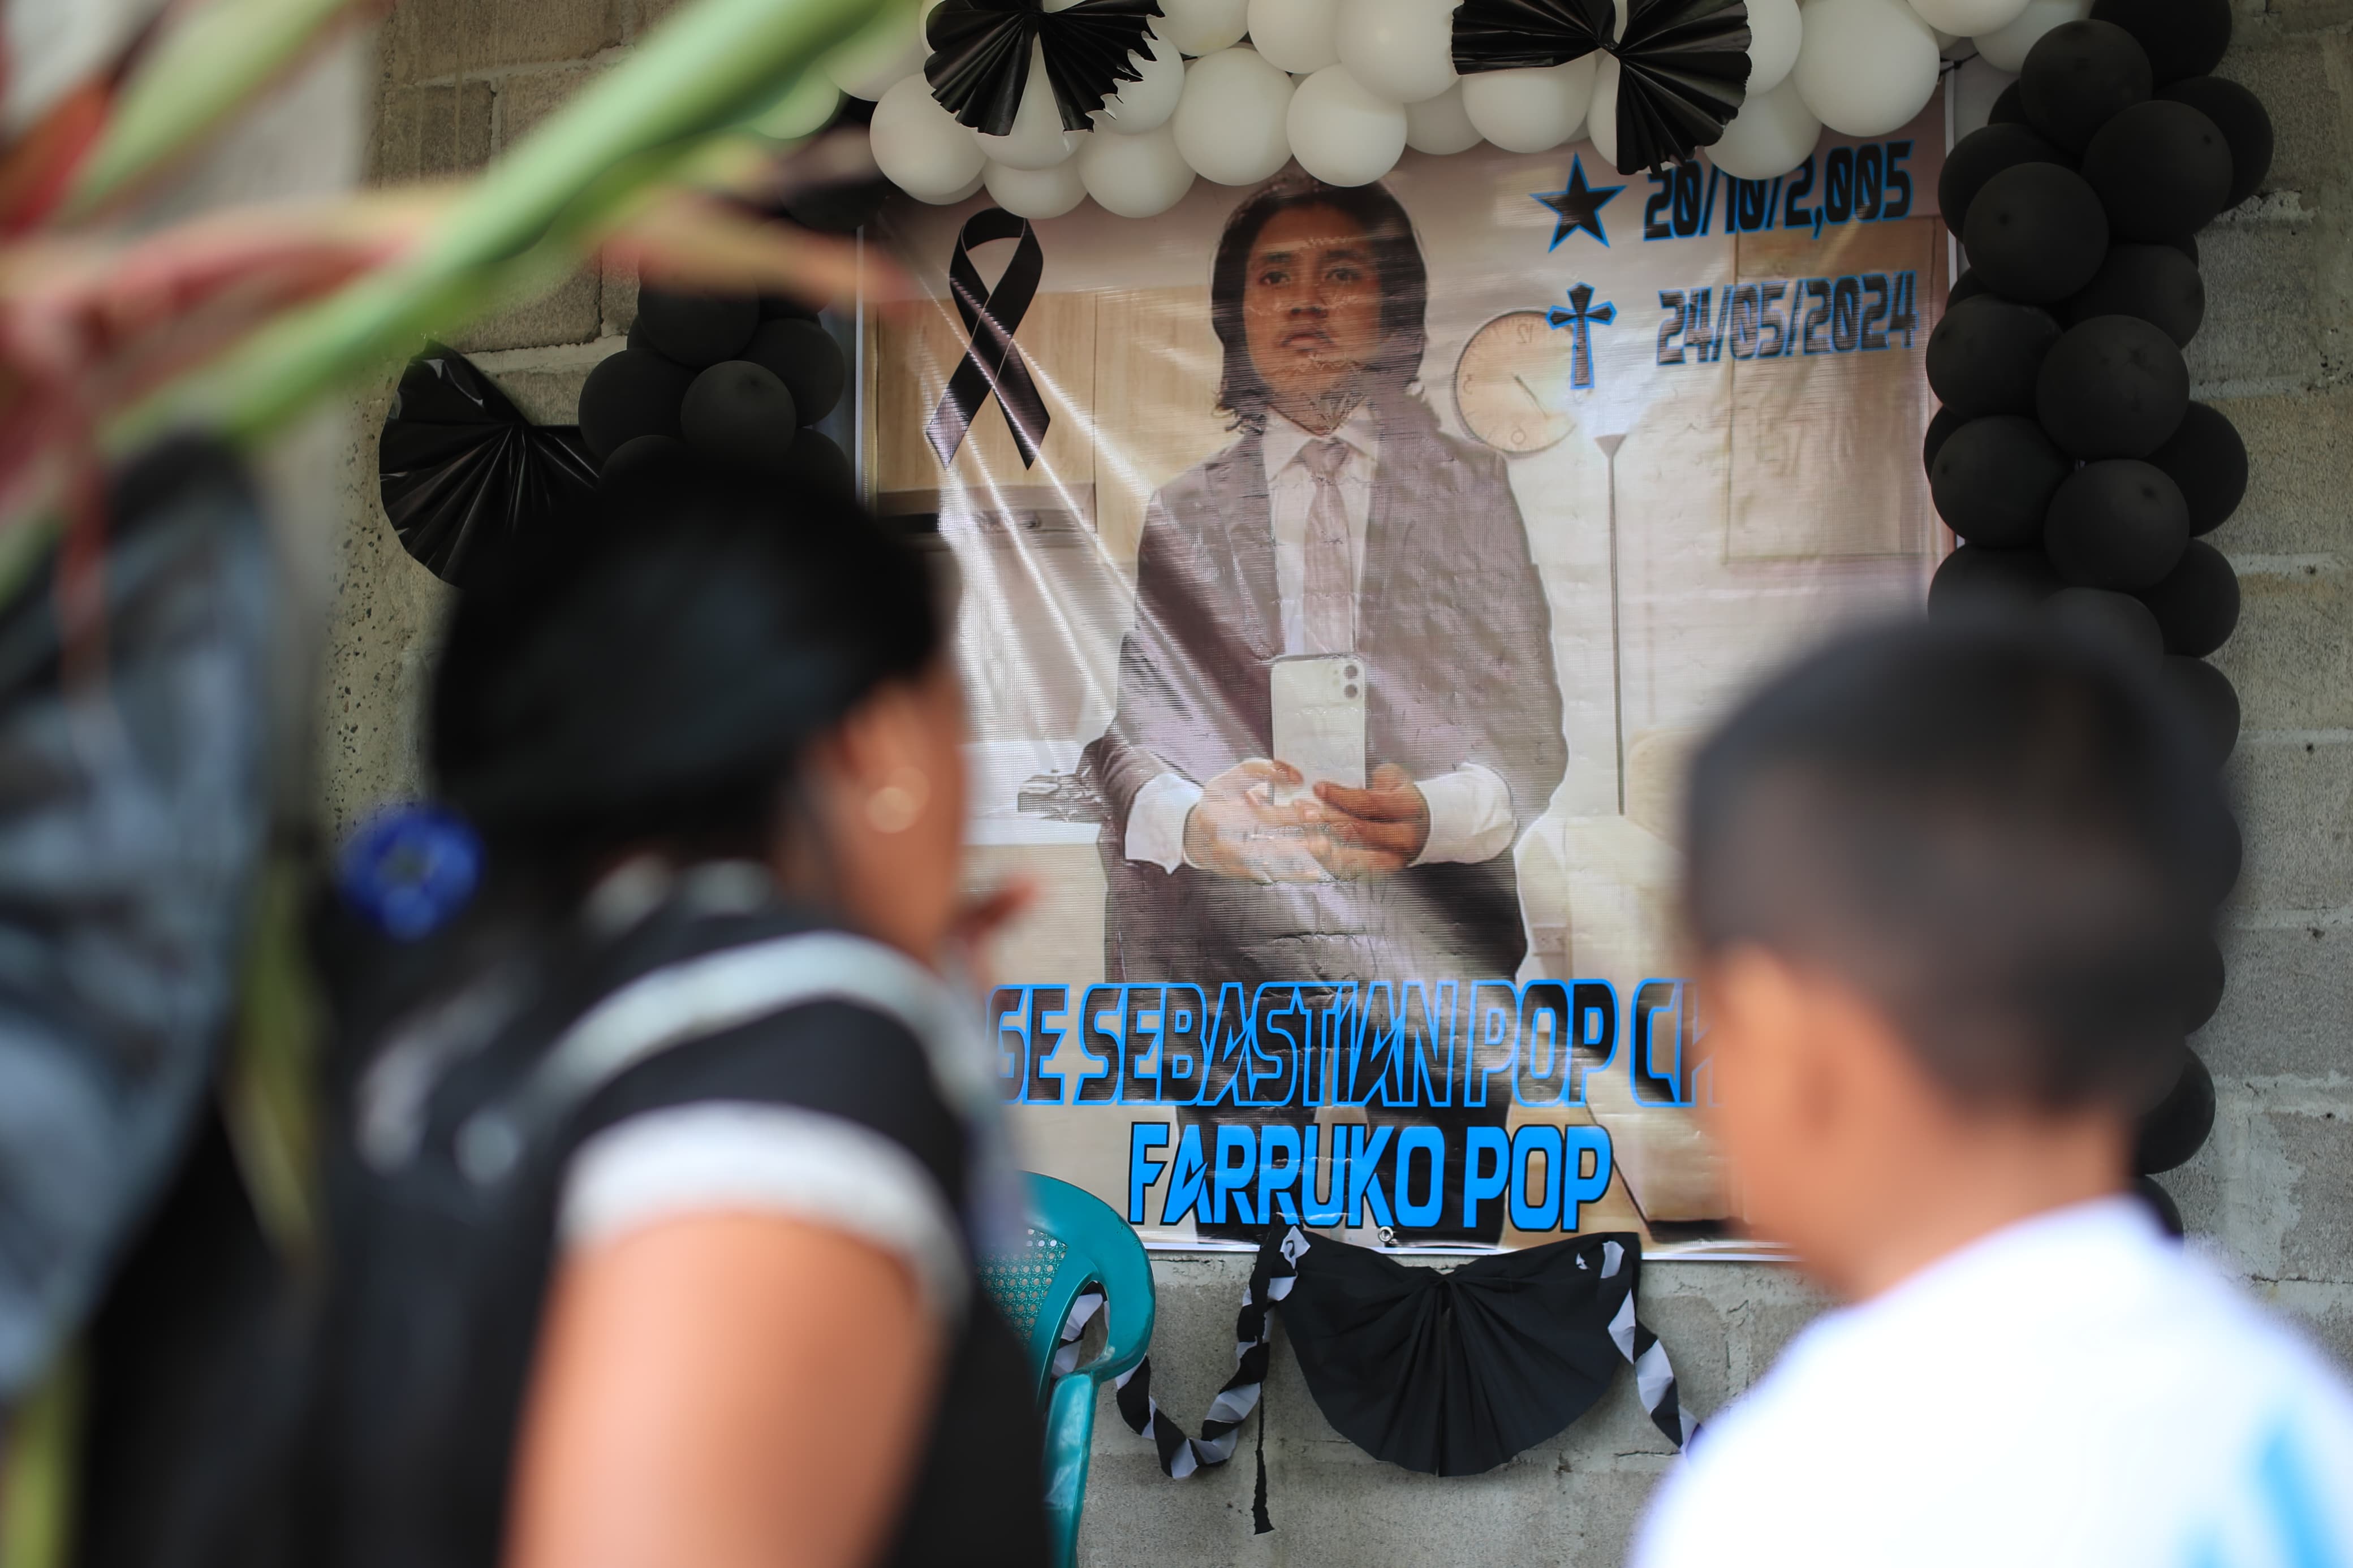 En una comunidad de Lívingston, Izabal, familiares y amigos de Farruko Pop se reúnen para darle el último adiós. (Foto Prensa Libre: Hemeroteca PL)